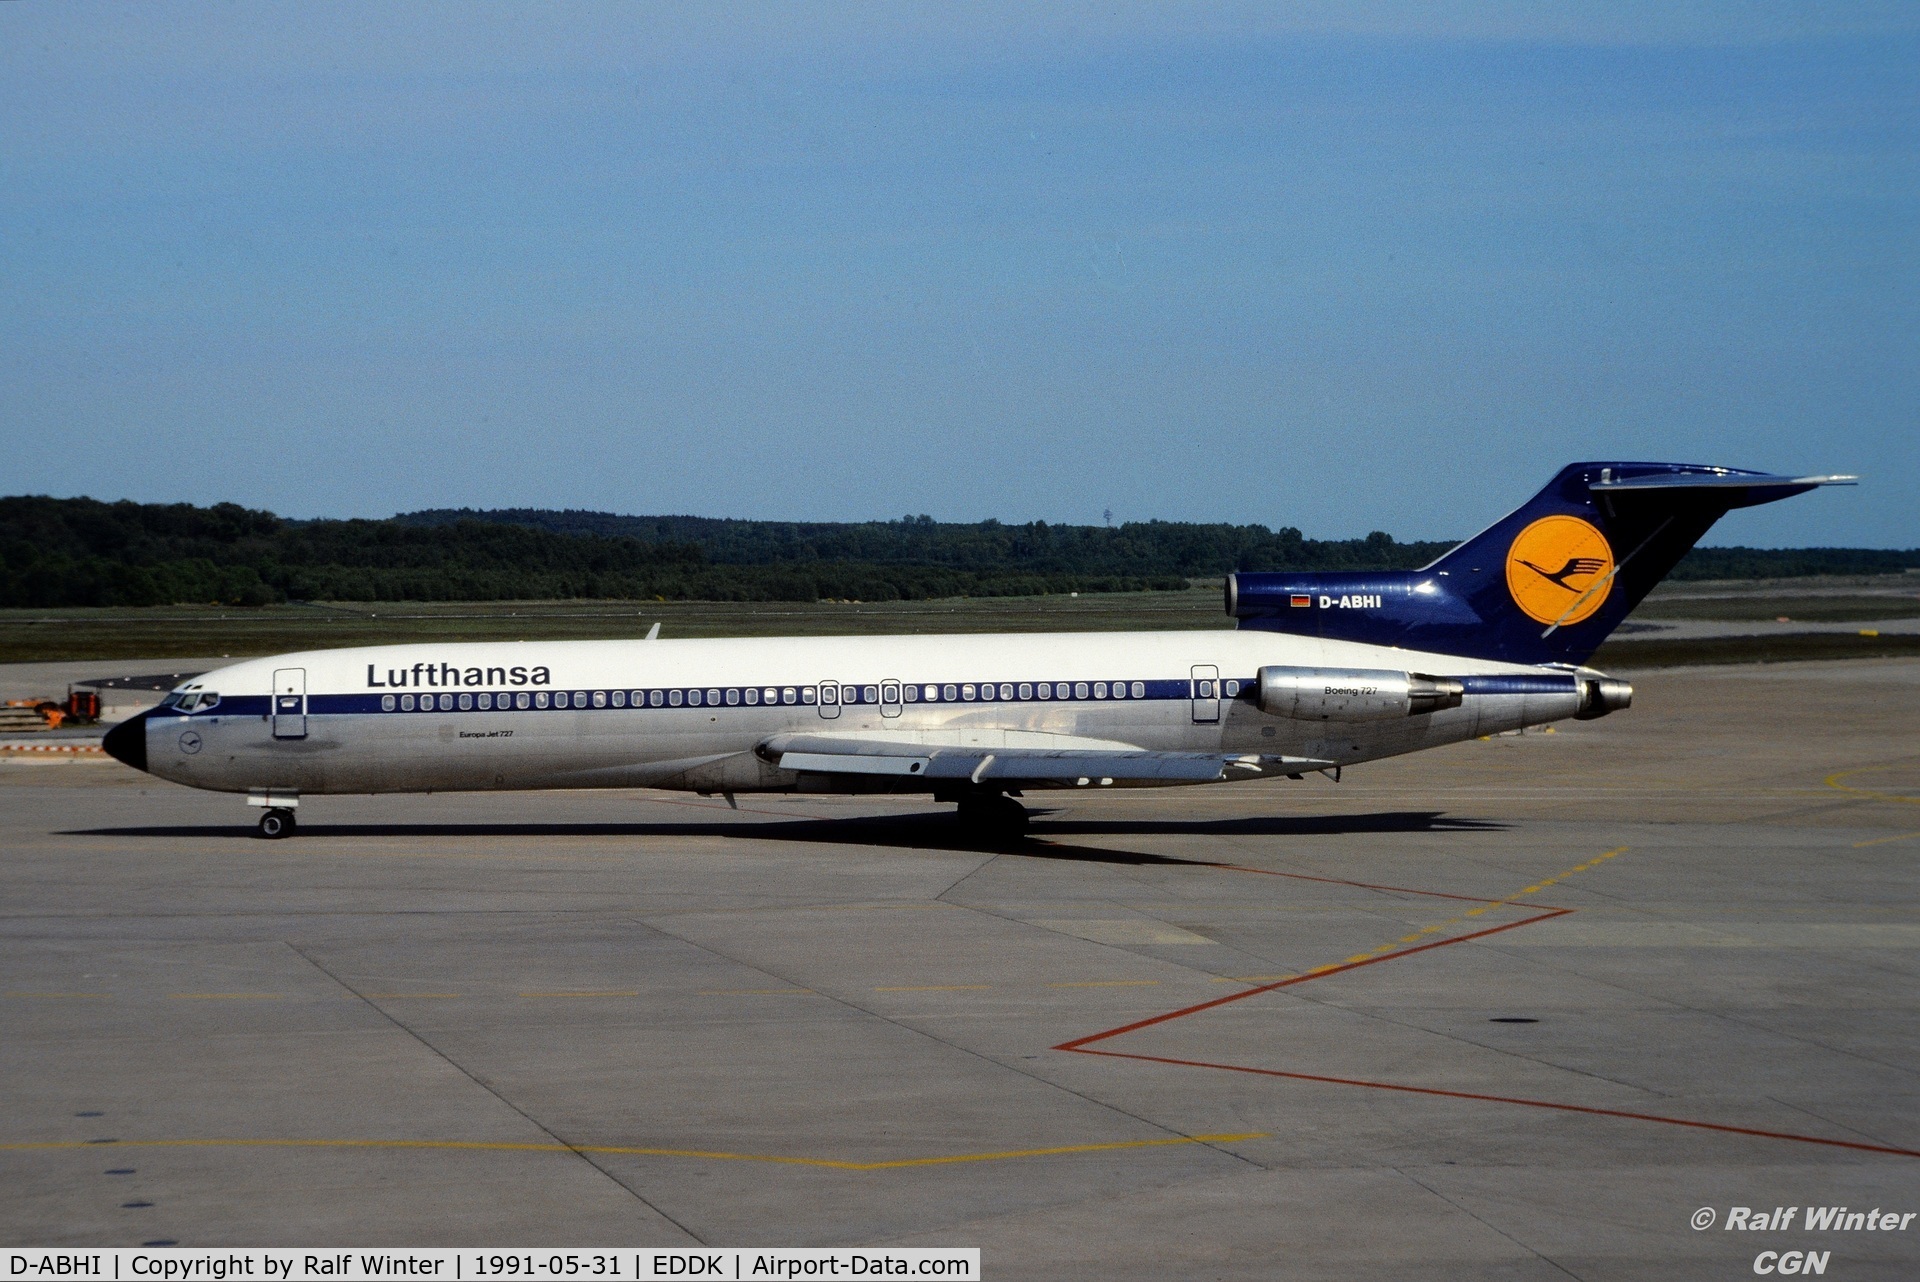 D-ABHI, 1972 Boeing 727-230 C/N 20560, Boeing 727-230 - Lufthansa - D-ABHI - 31.05.1991 - CGN - From a slide